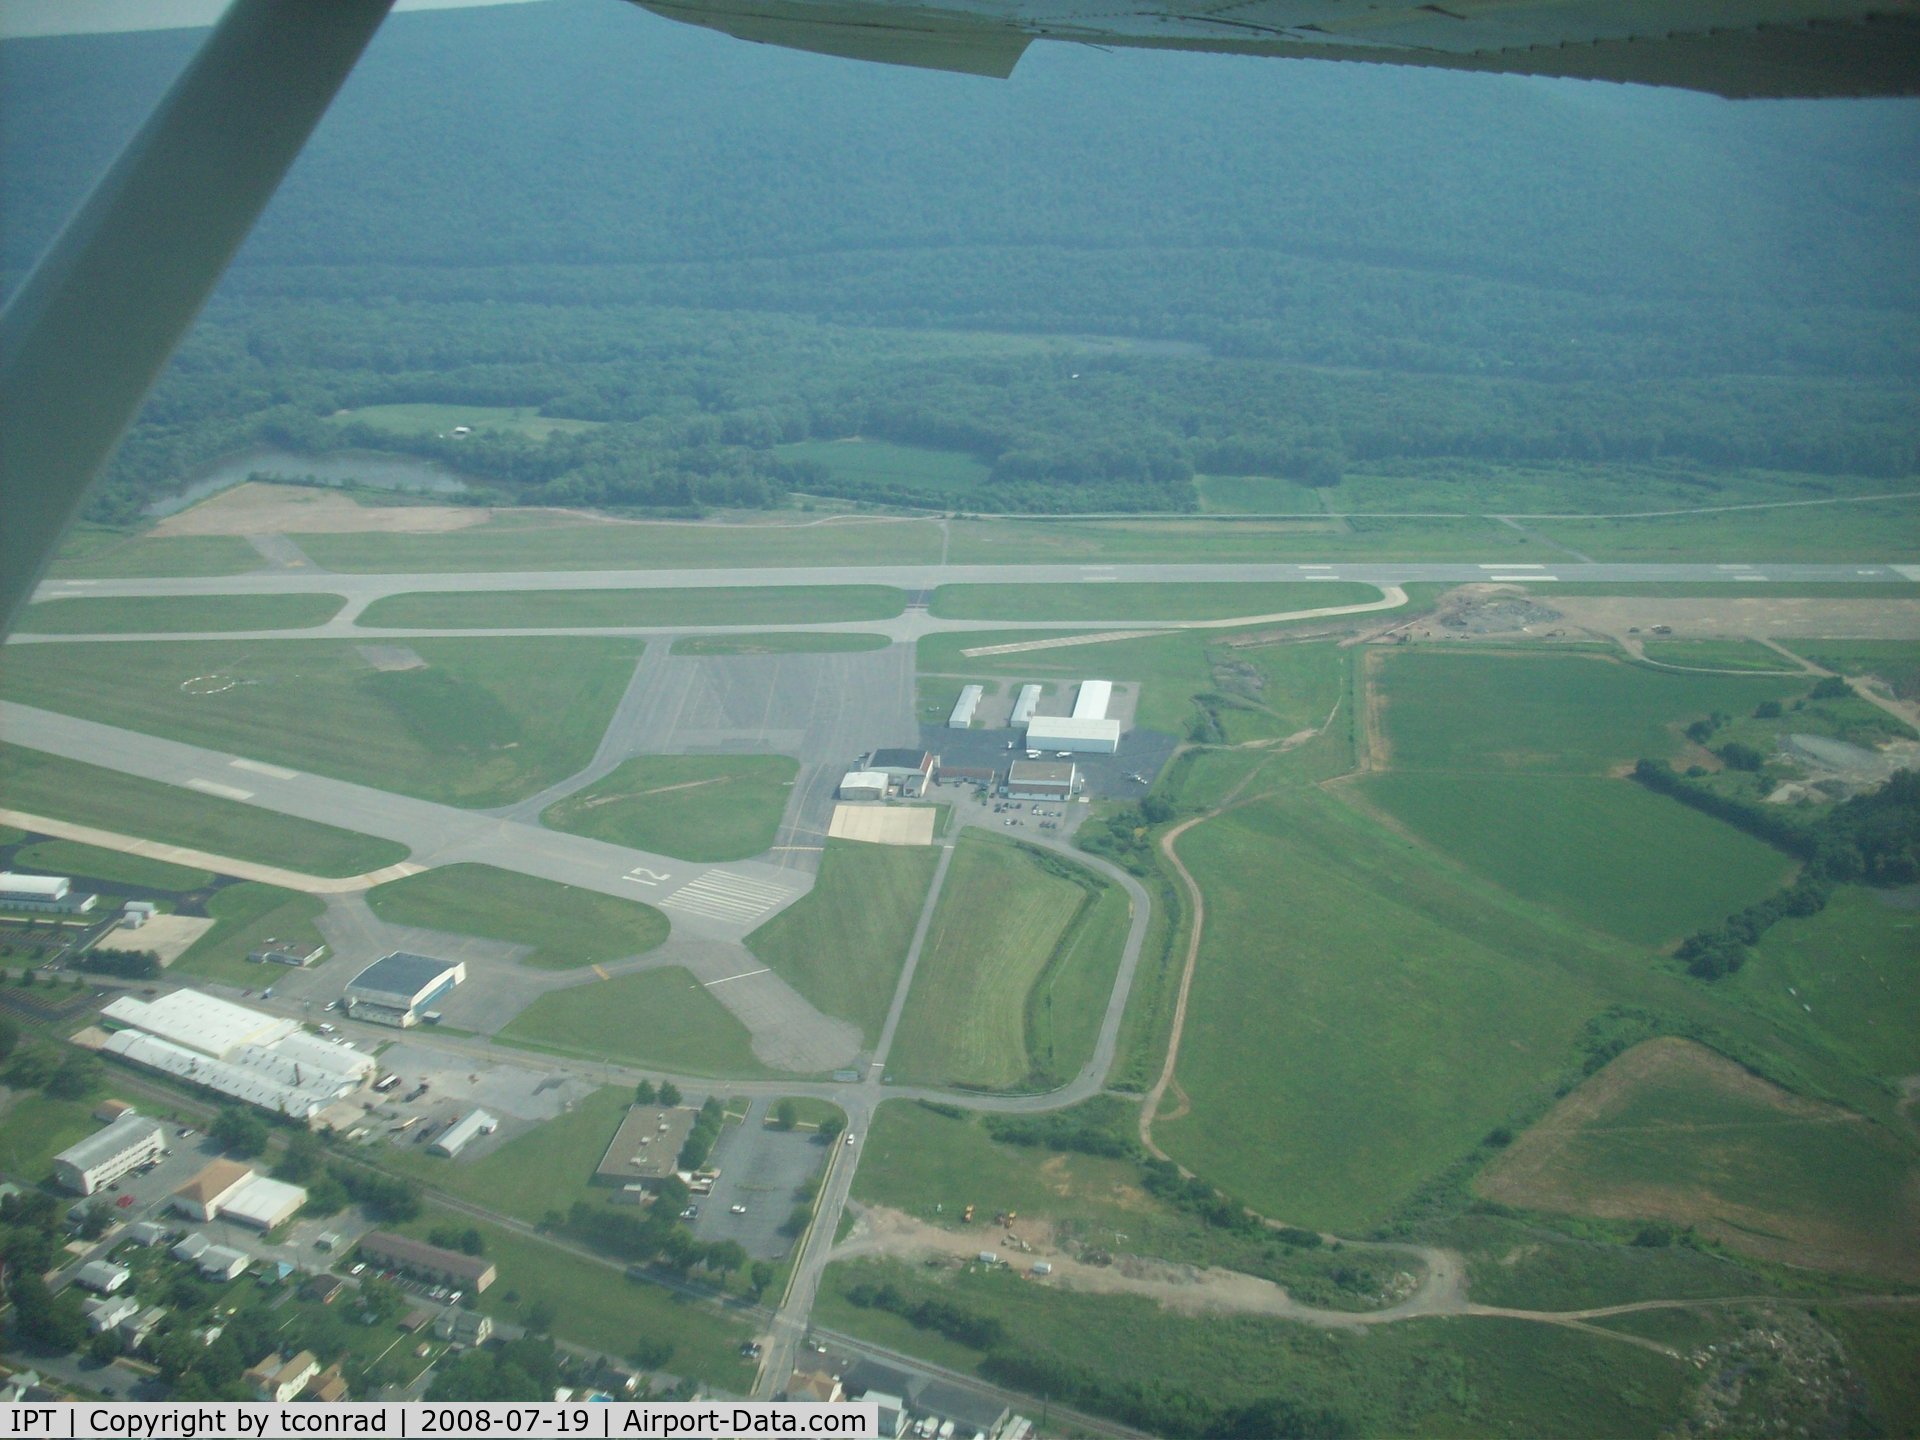 Williamsport Regional Airport (IPT) - leaving Williamsport